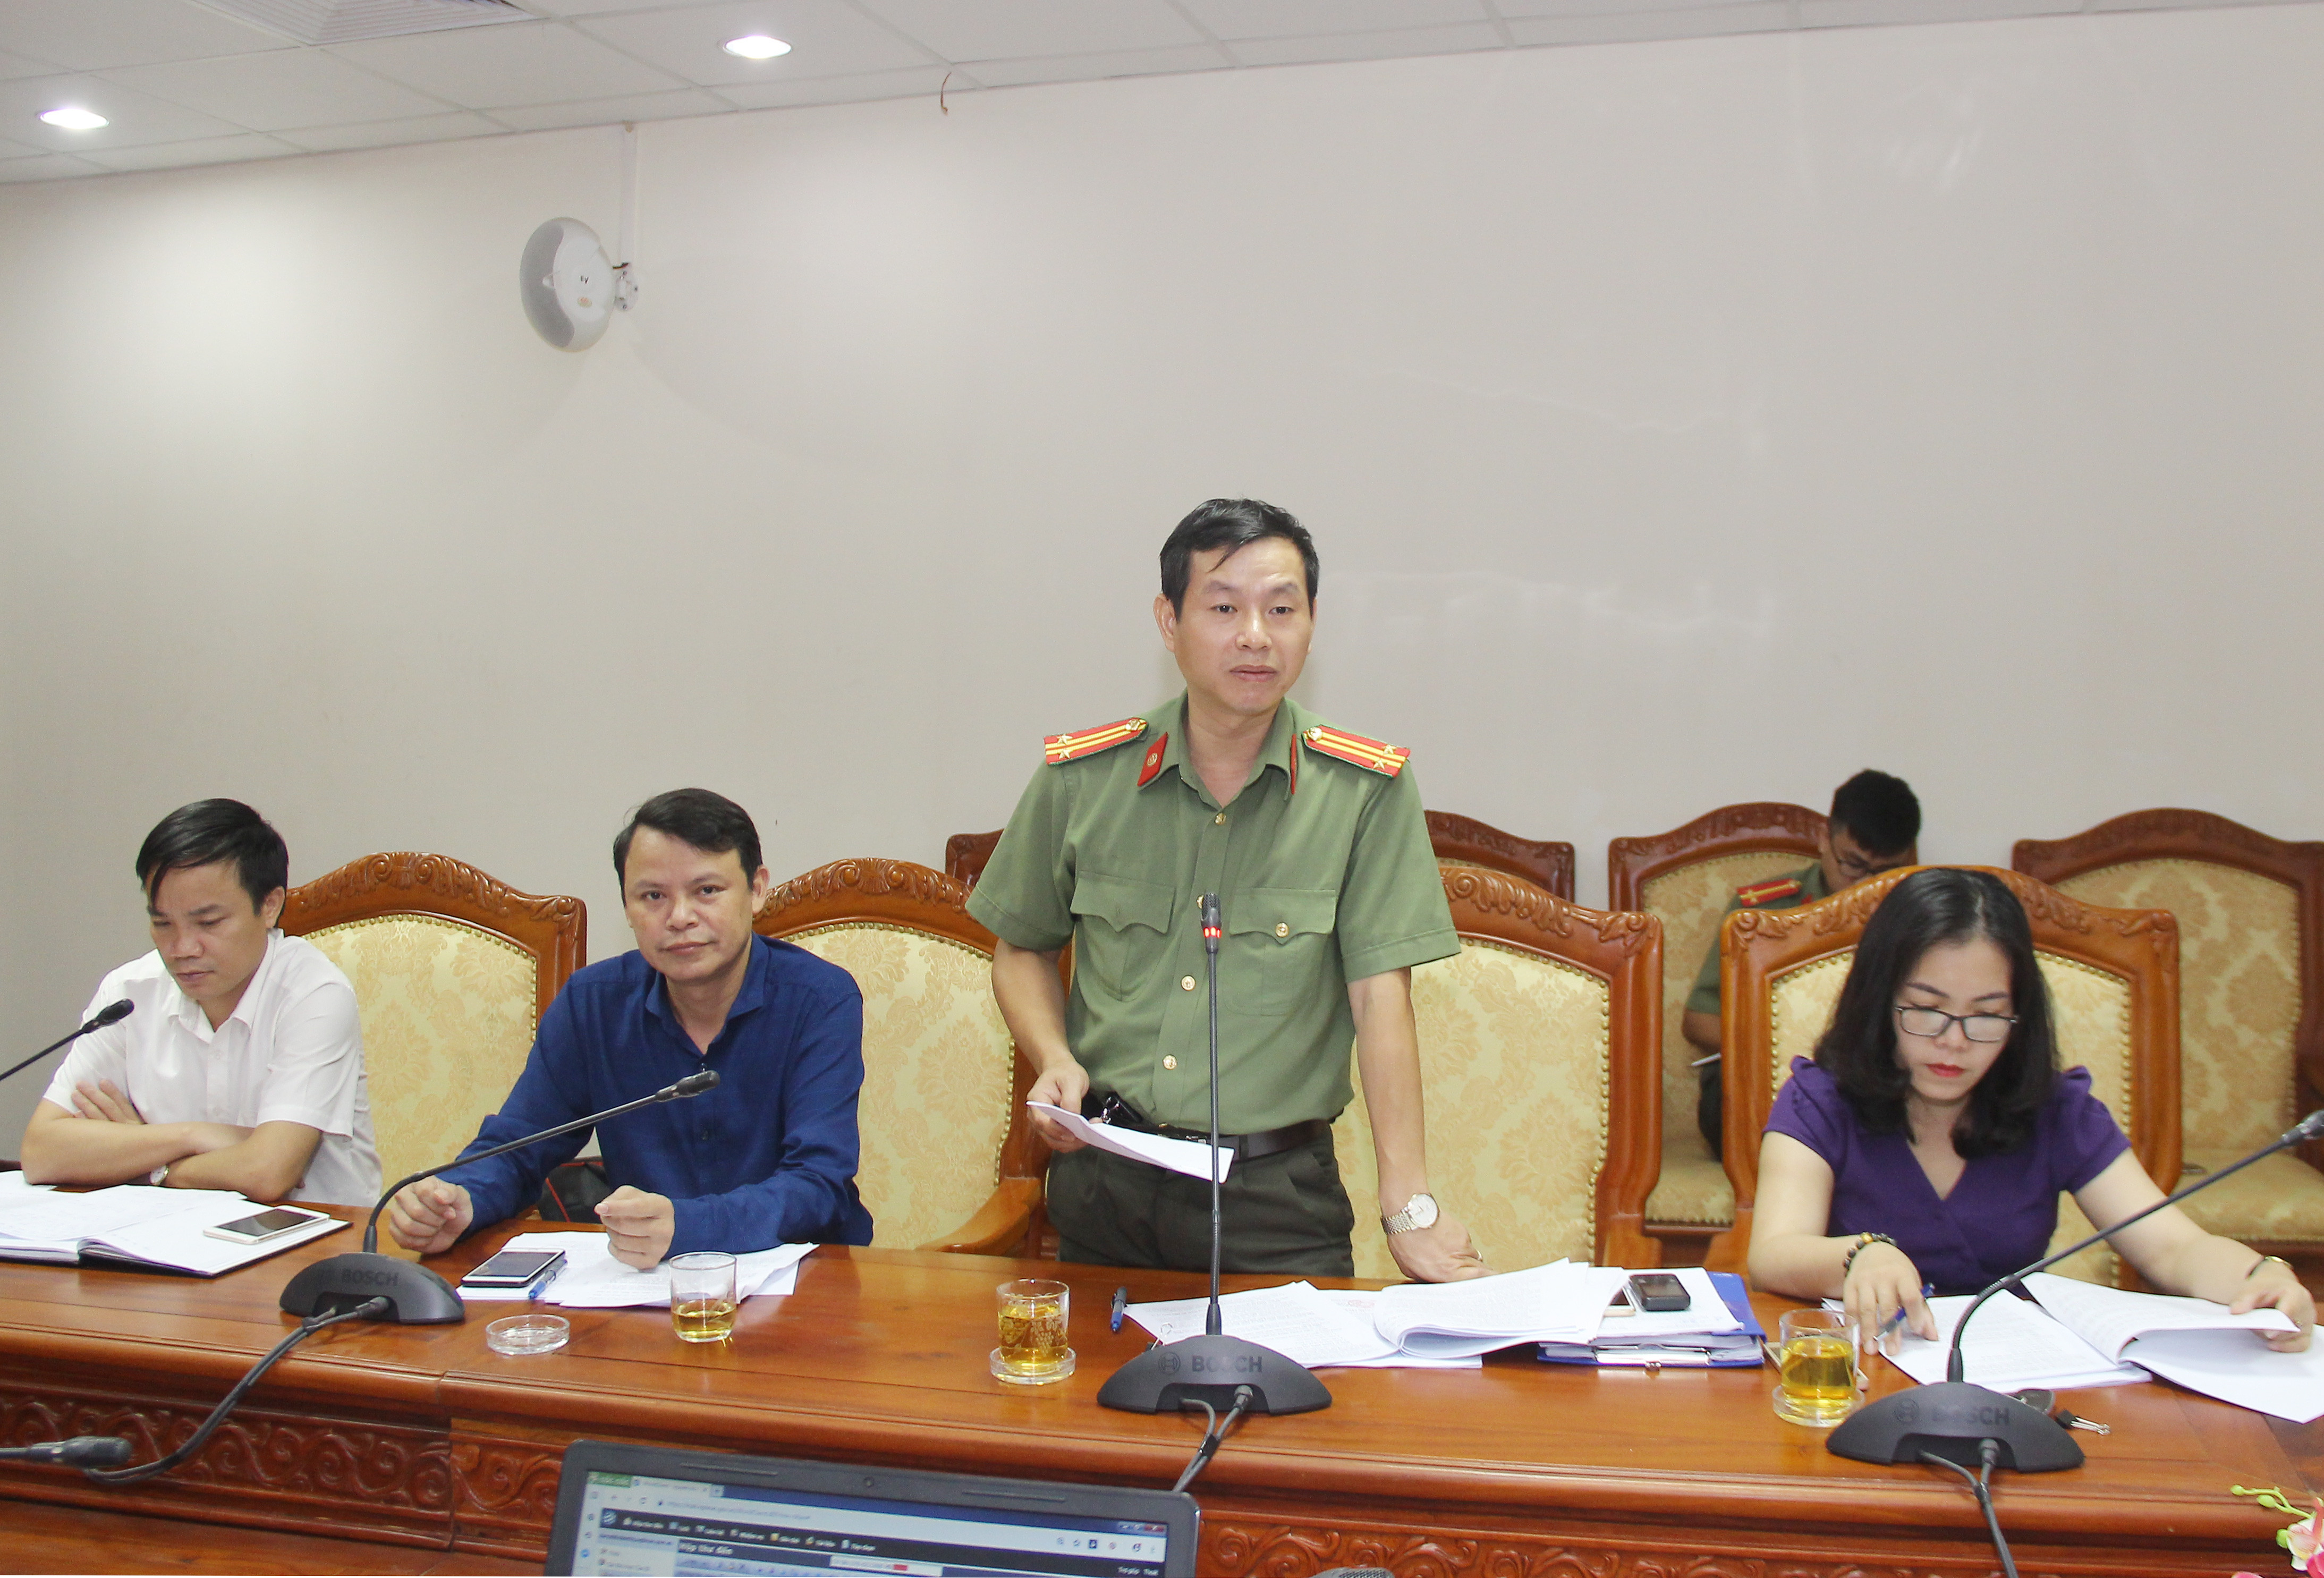 Đồng chí Nguyễn Hải Thiêm - Đội trưởng Đội Pháp chế, Công an tỉnh tham gia ý kiến tại hội nghị. Ảnh: Mai Hoa